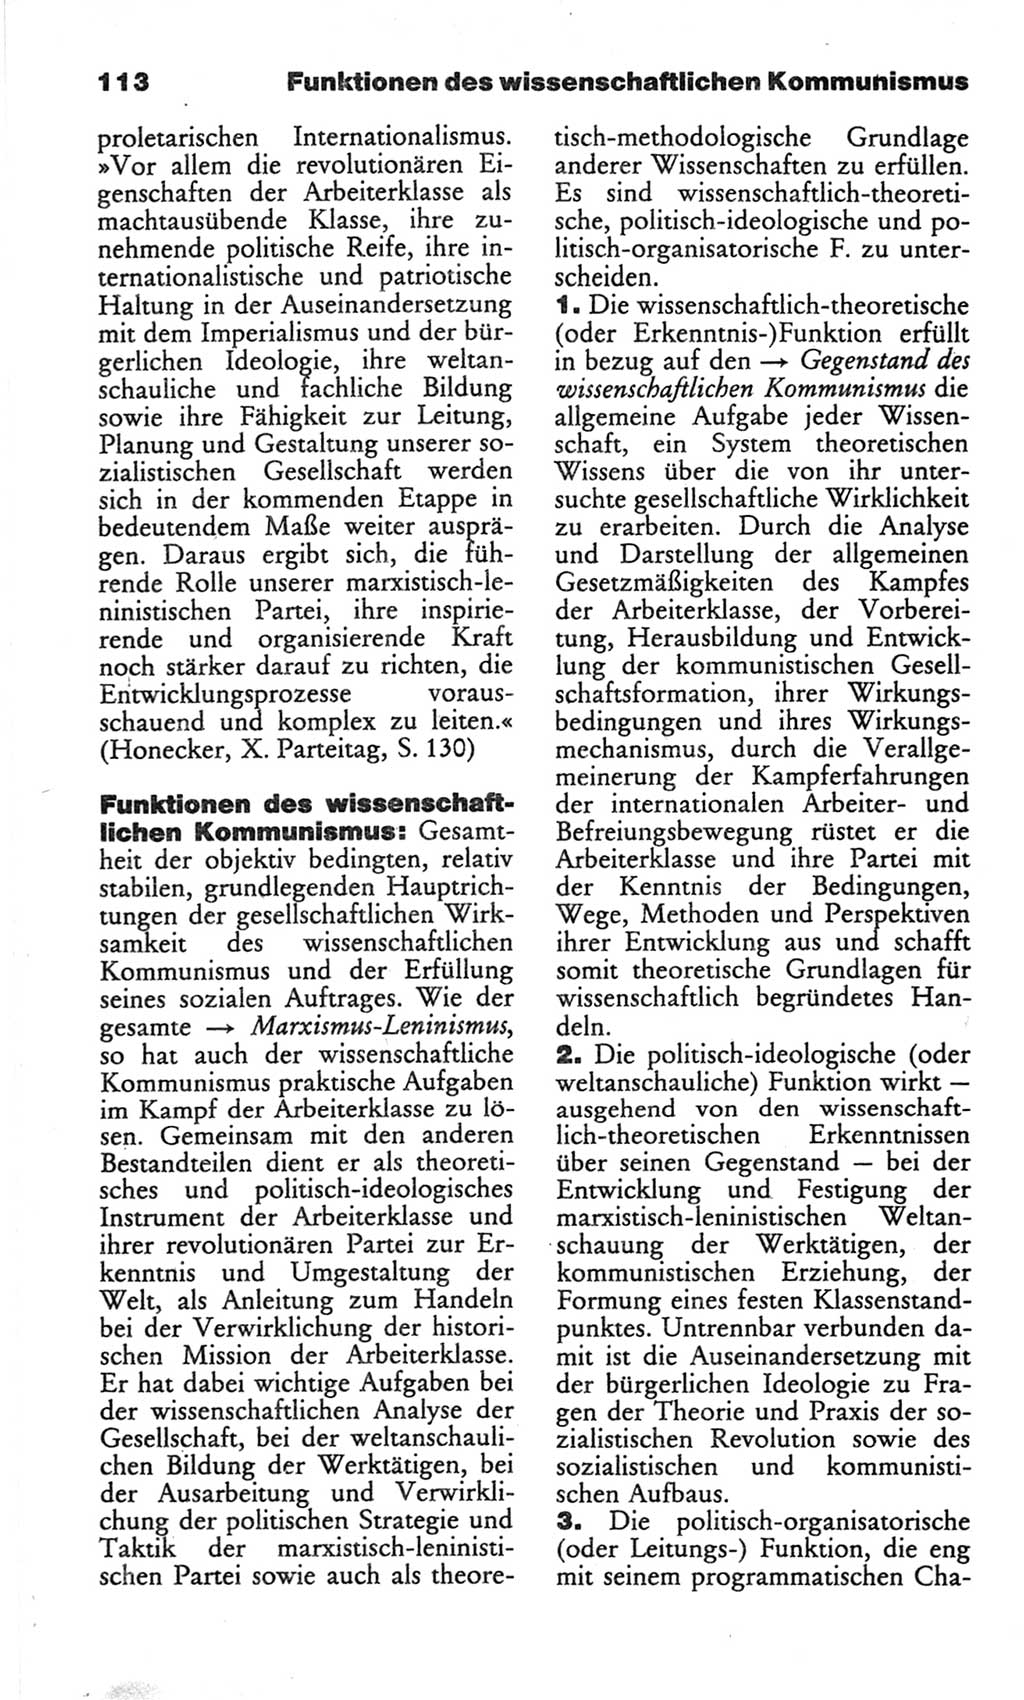 Wörterbuch des wissenschaftlichen Kommunismus [Deutsche Demokratische Republik (DDR)] 1982, Seite 113 (Wb. wiss. Komm. DDR 1982, S. 113)